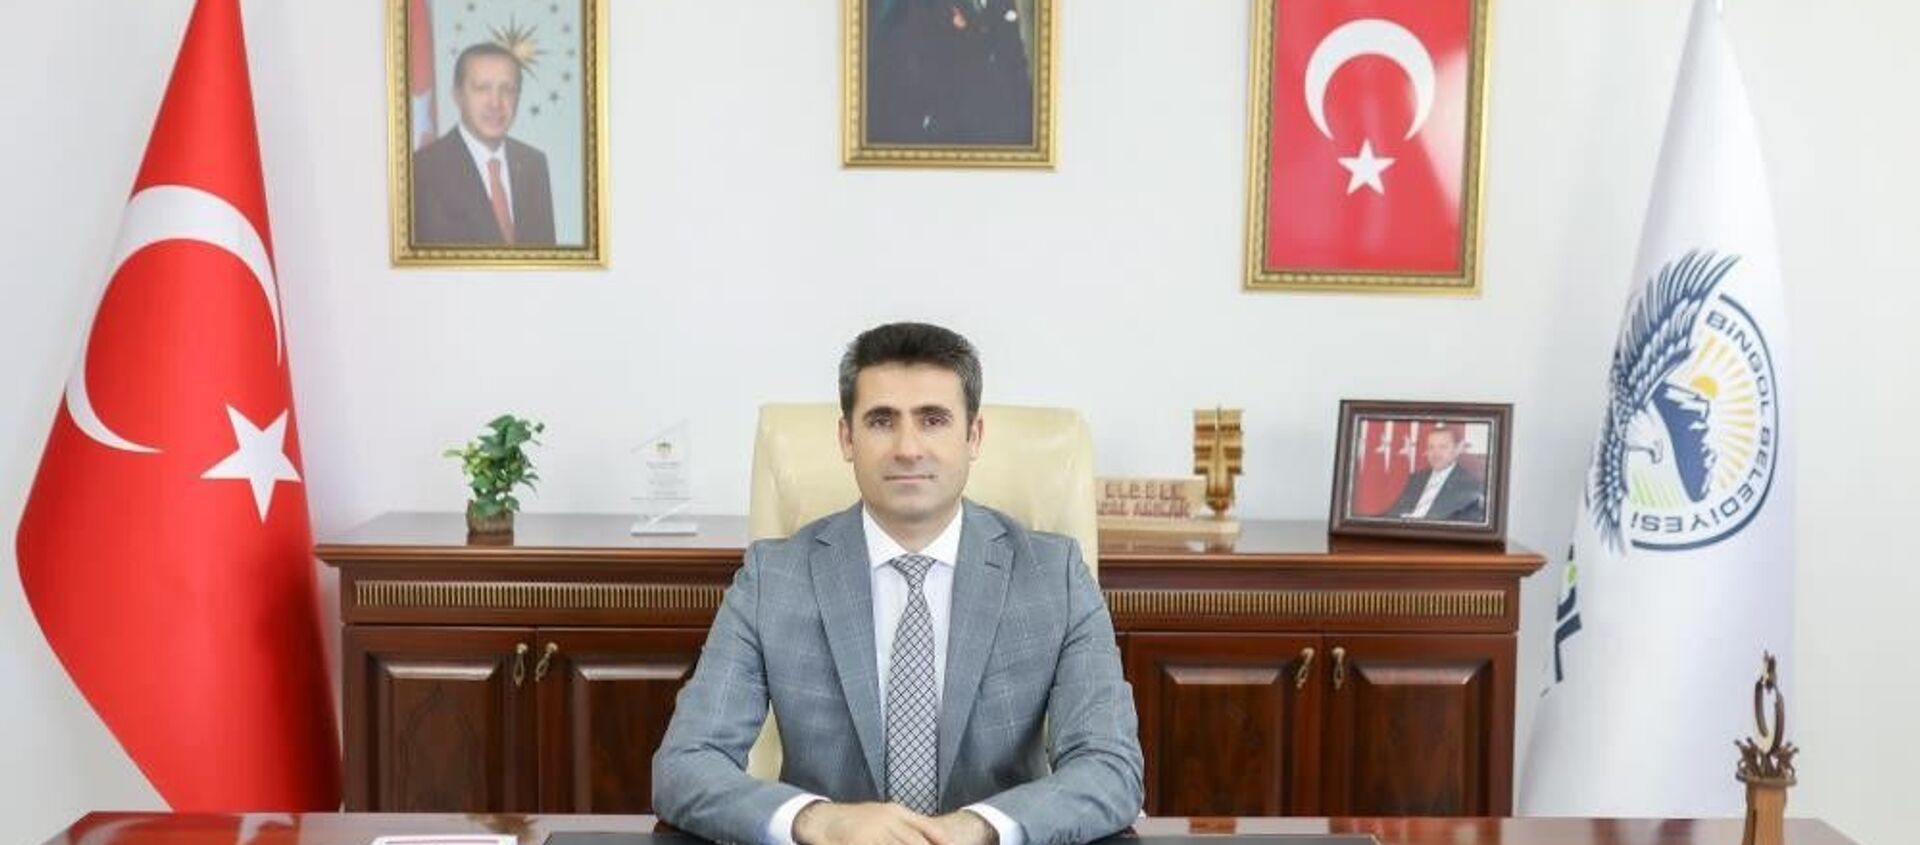 Bingöl Belediye Başkanı Erdal Arıkan - Sputnik Türkiye, 1920, 01.08.2021